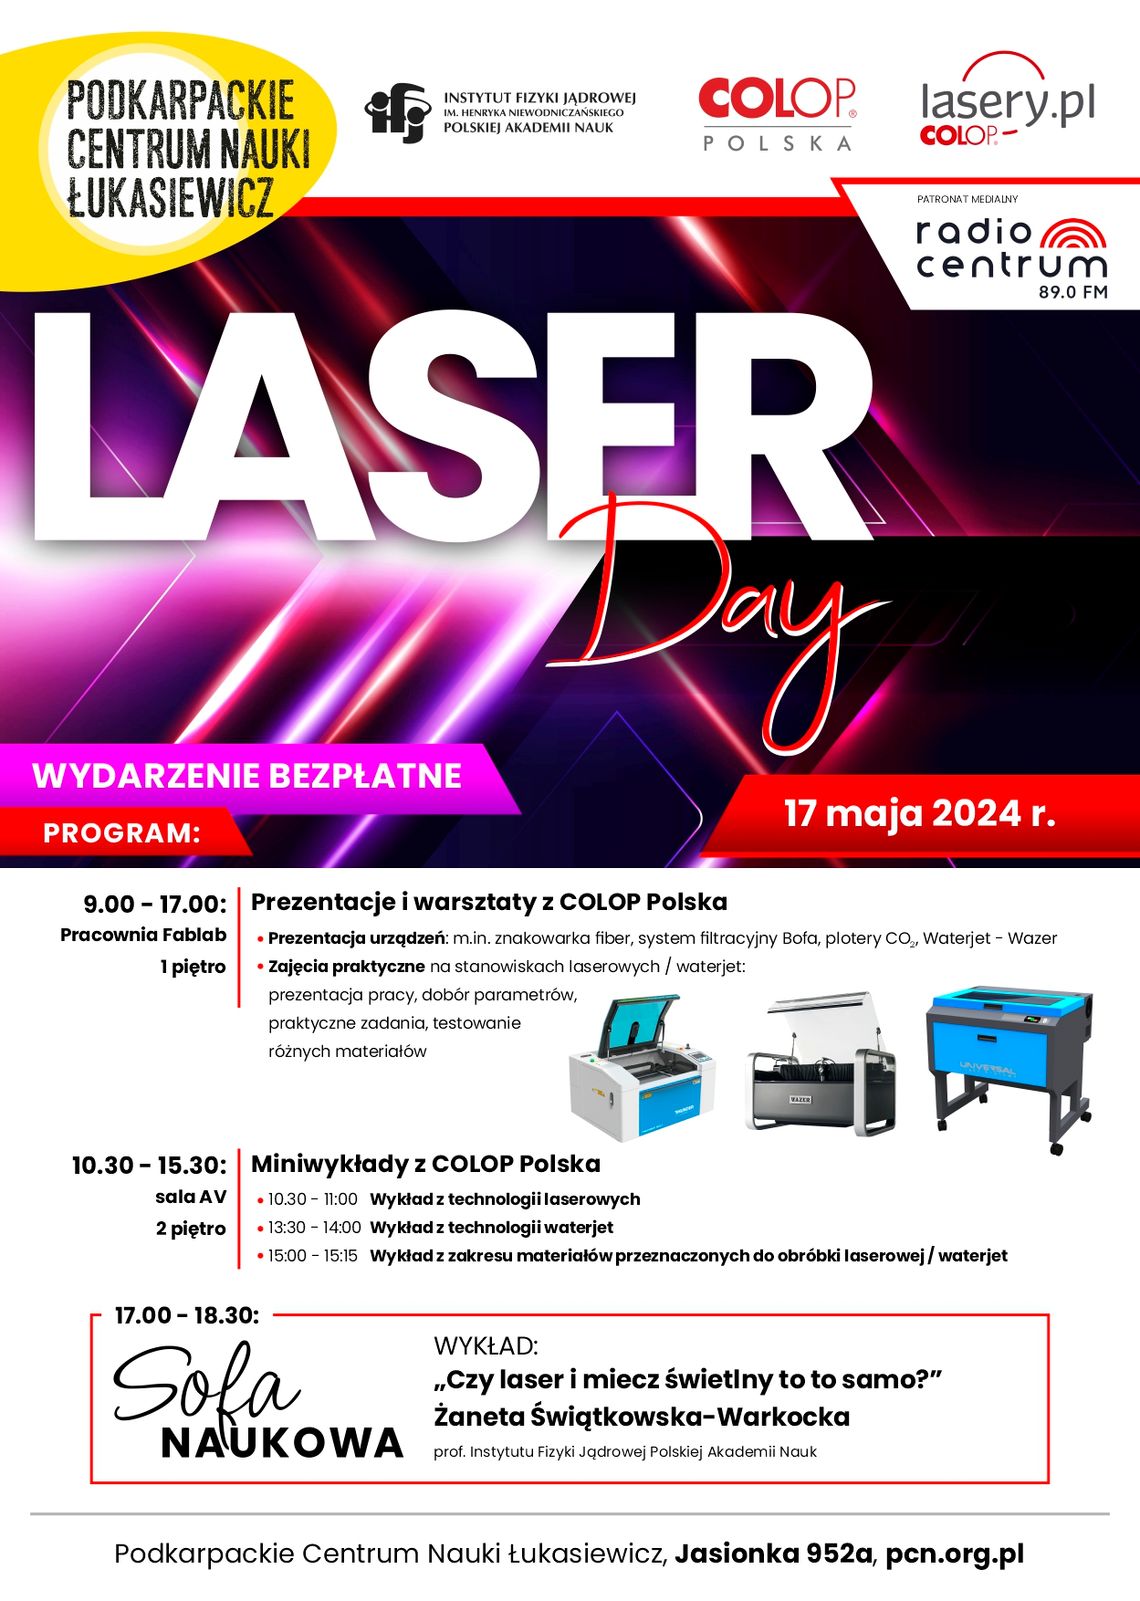 Laser Day w Podkarpackim Centrum Nauki Łukasiewicz